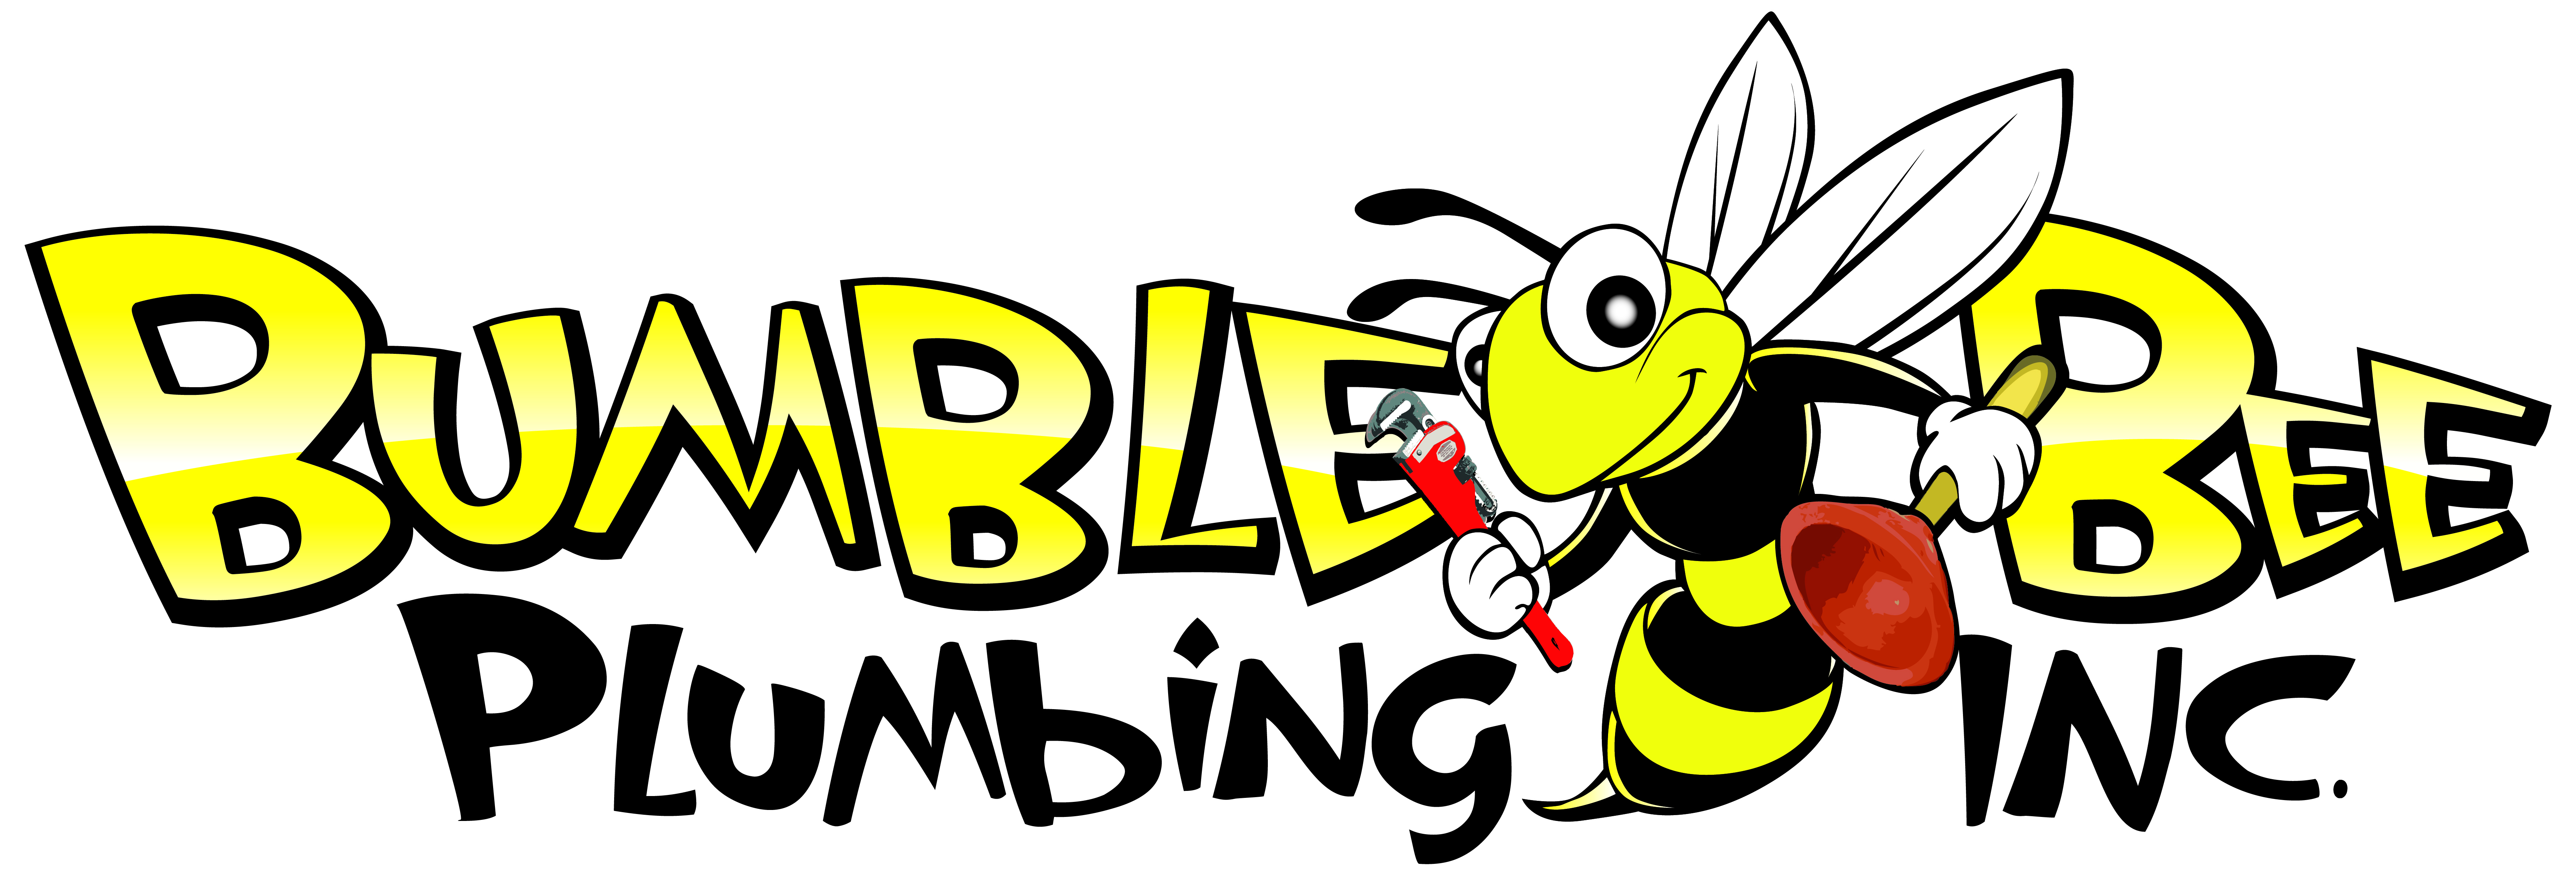 Bumble Bee Plumbing, Inc. Logo